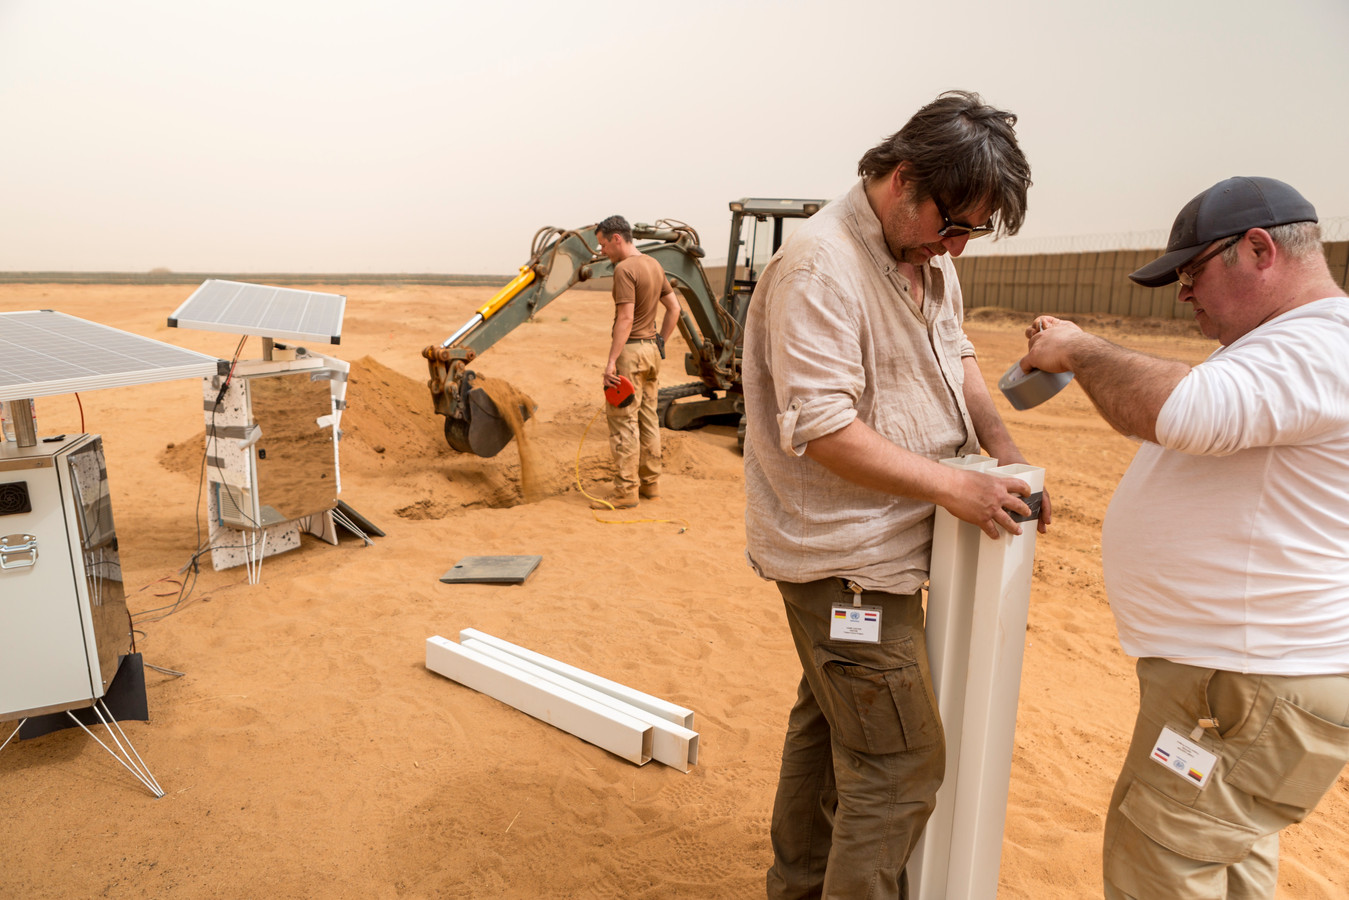 Ap Verheggen test Sunglacier in de woestijn in Mali.